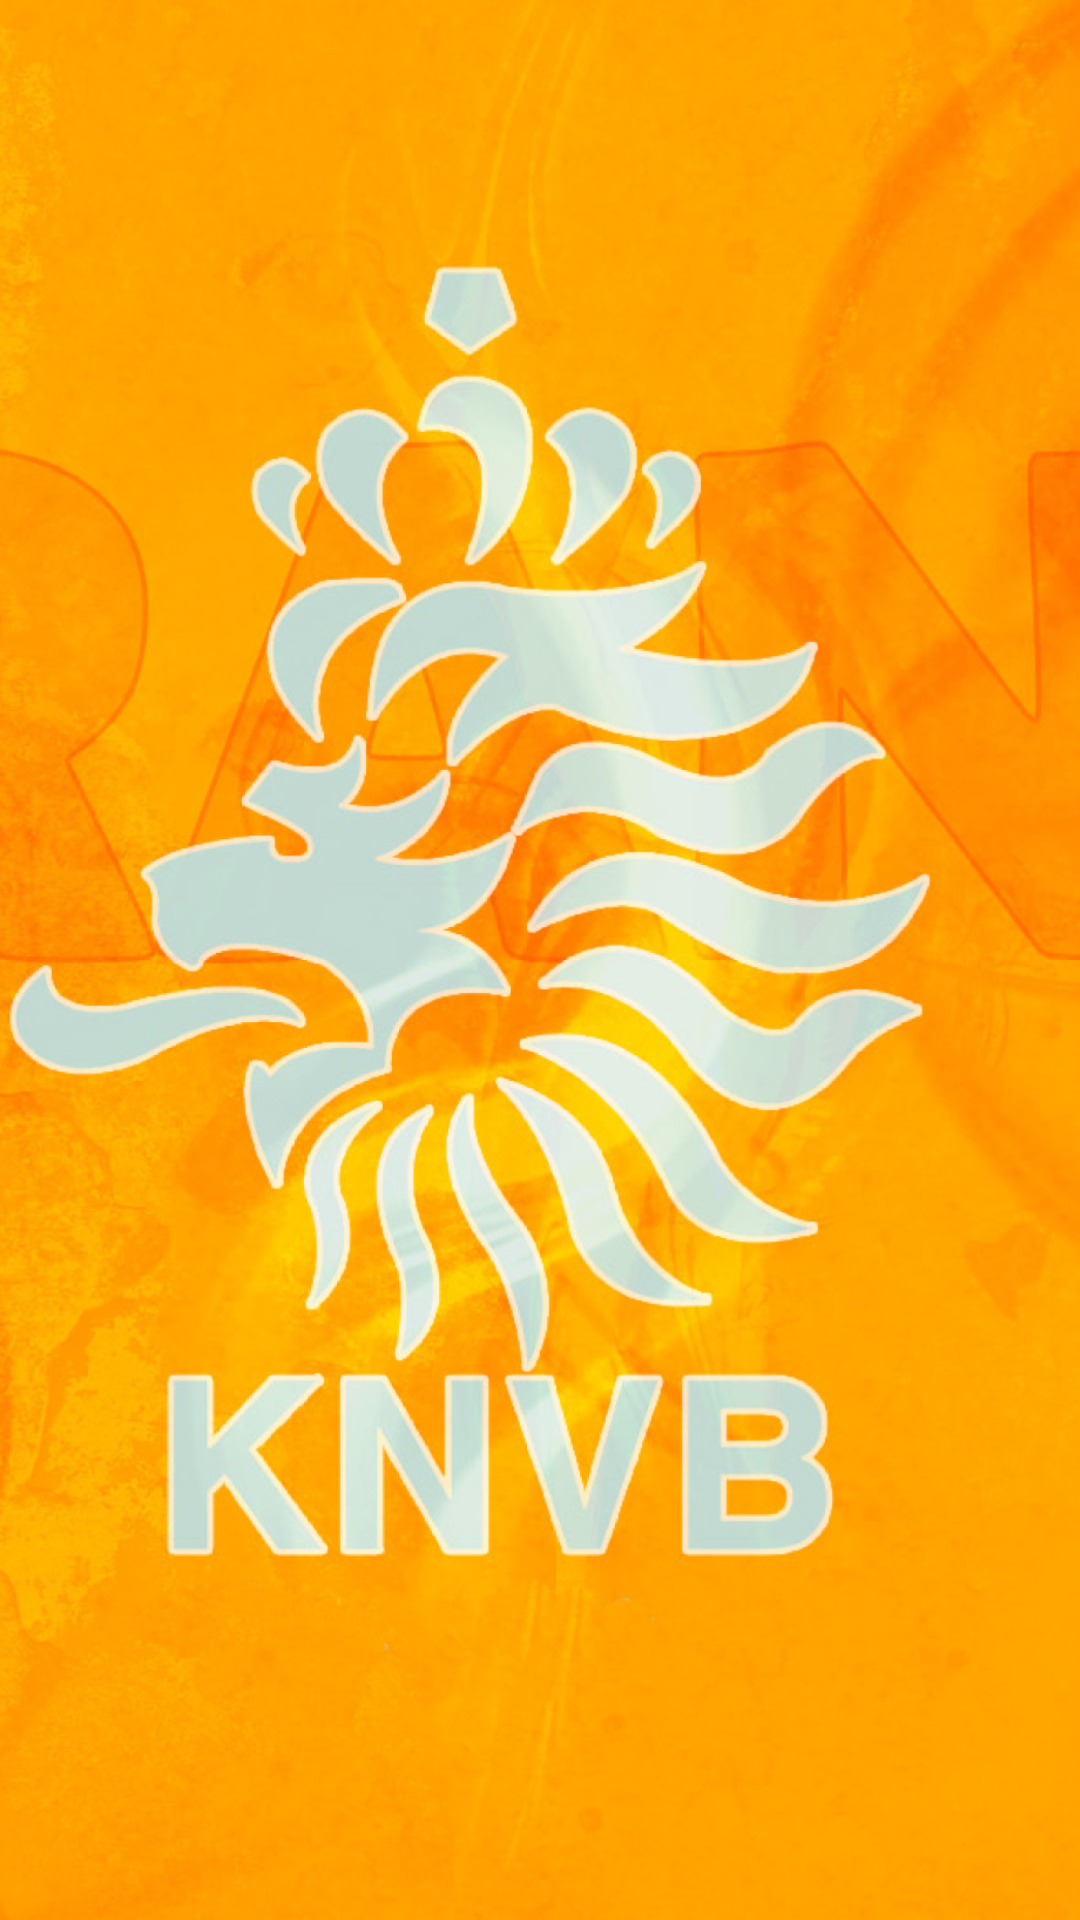 Das Royal Netherlands Football Association Wallpaper 1080x1920